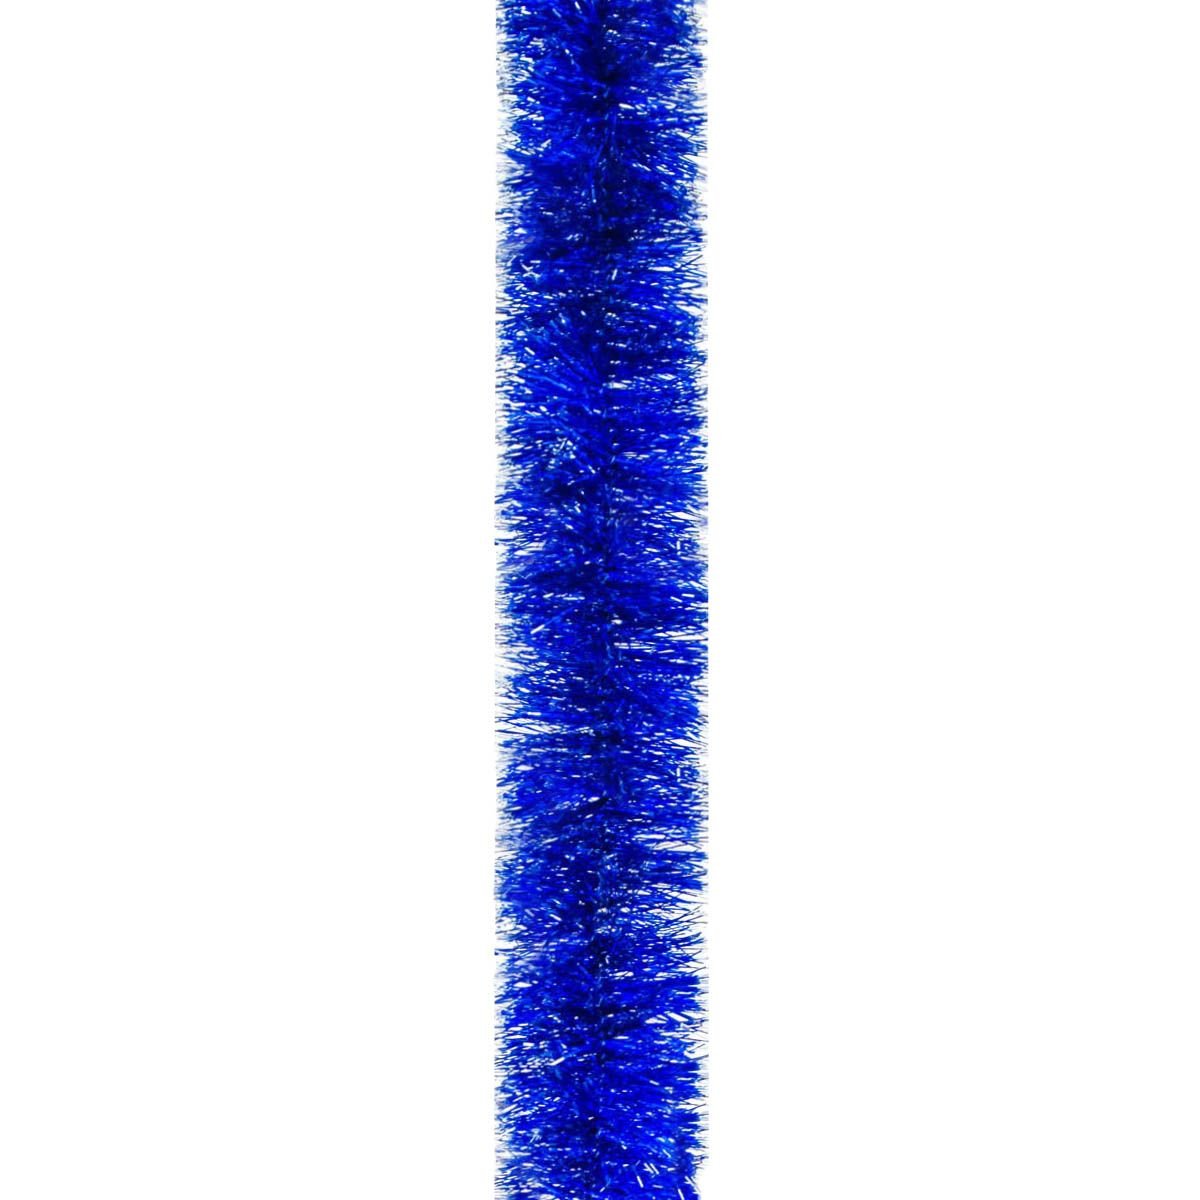 Мішура Novogod'ko 7.5 см 2 м синя зі срібними кінчиками (980448) - фото 1